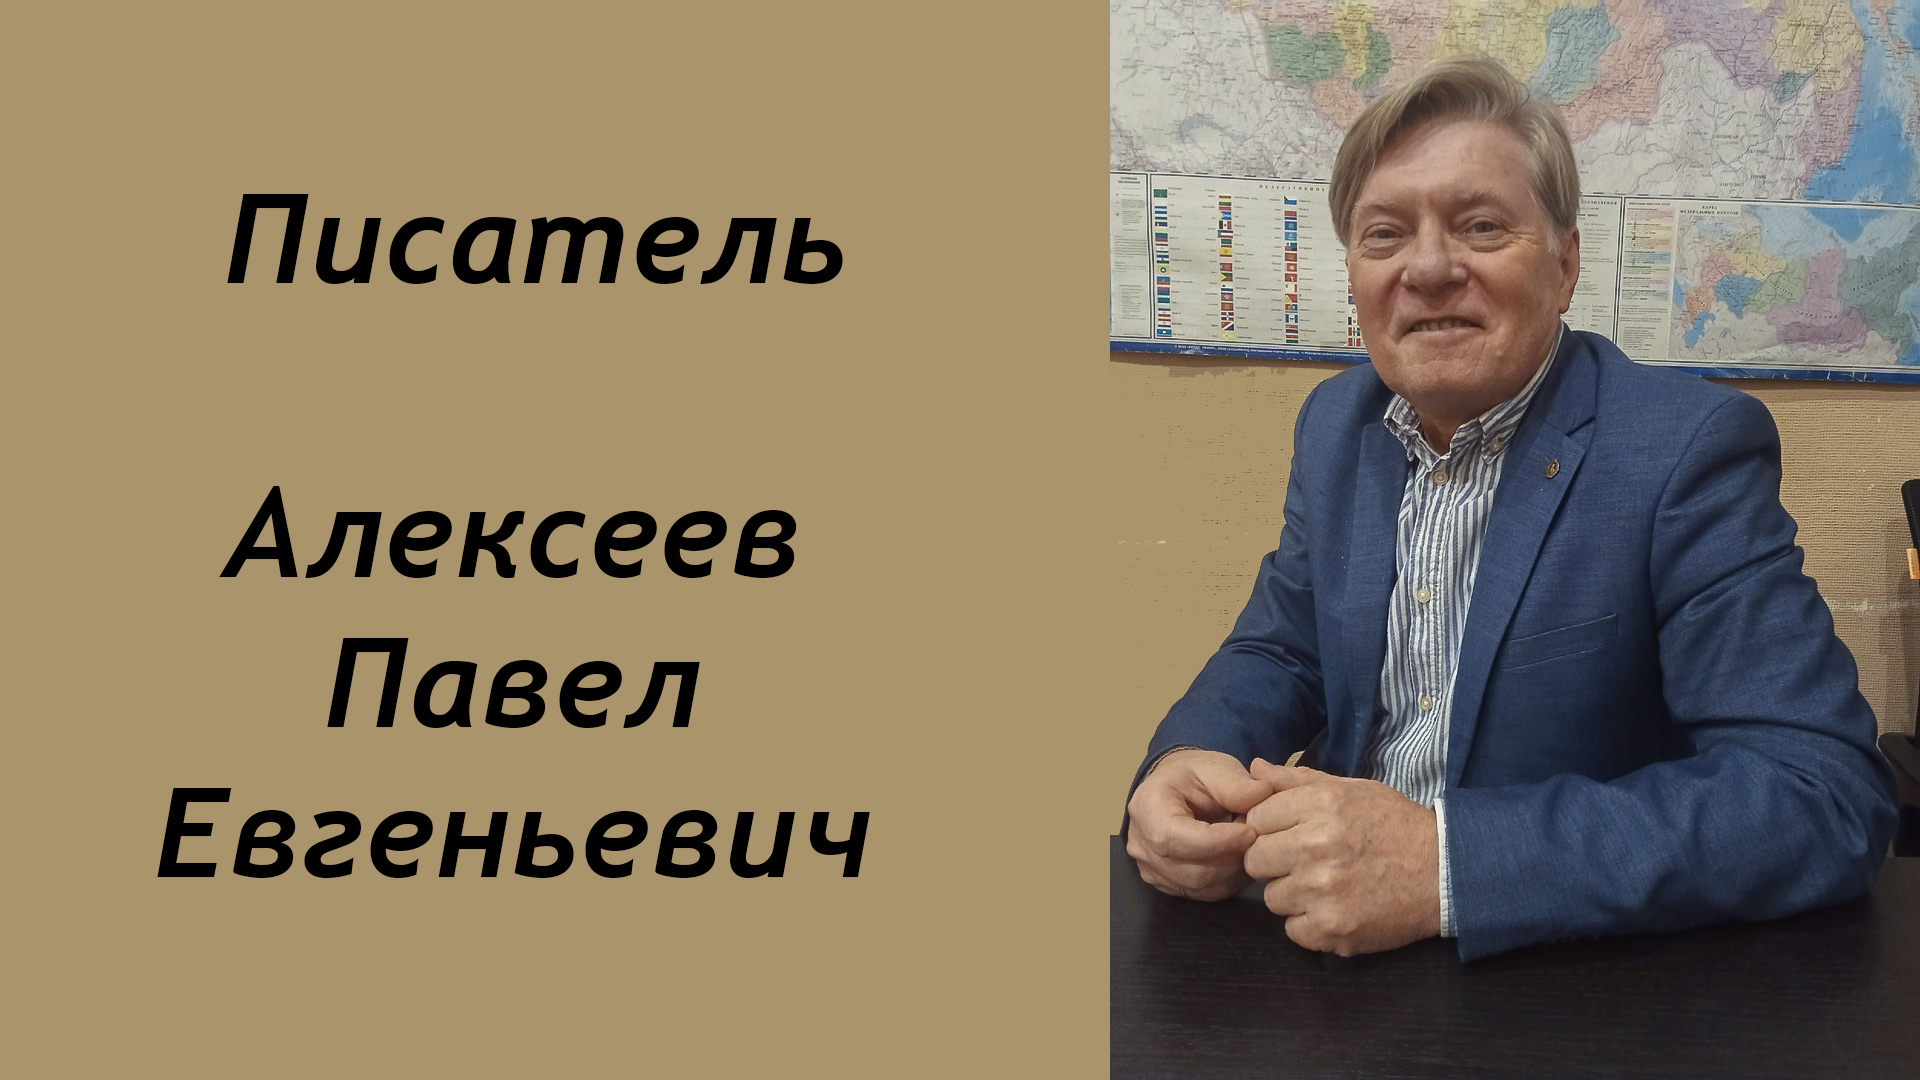 Интервью с писателем Алексеевым Павлом Евгеньевичем